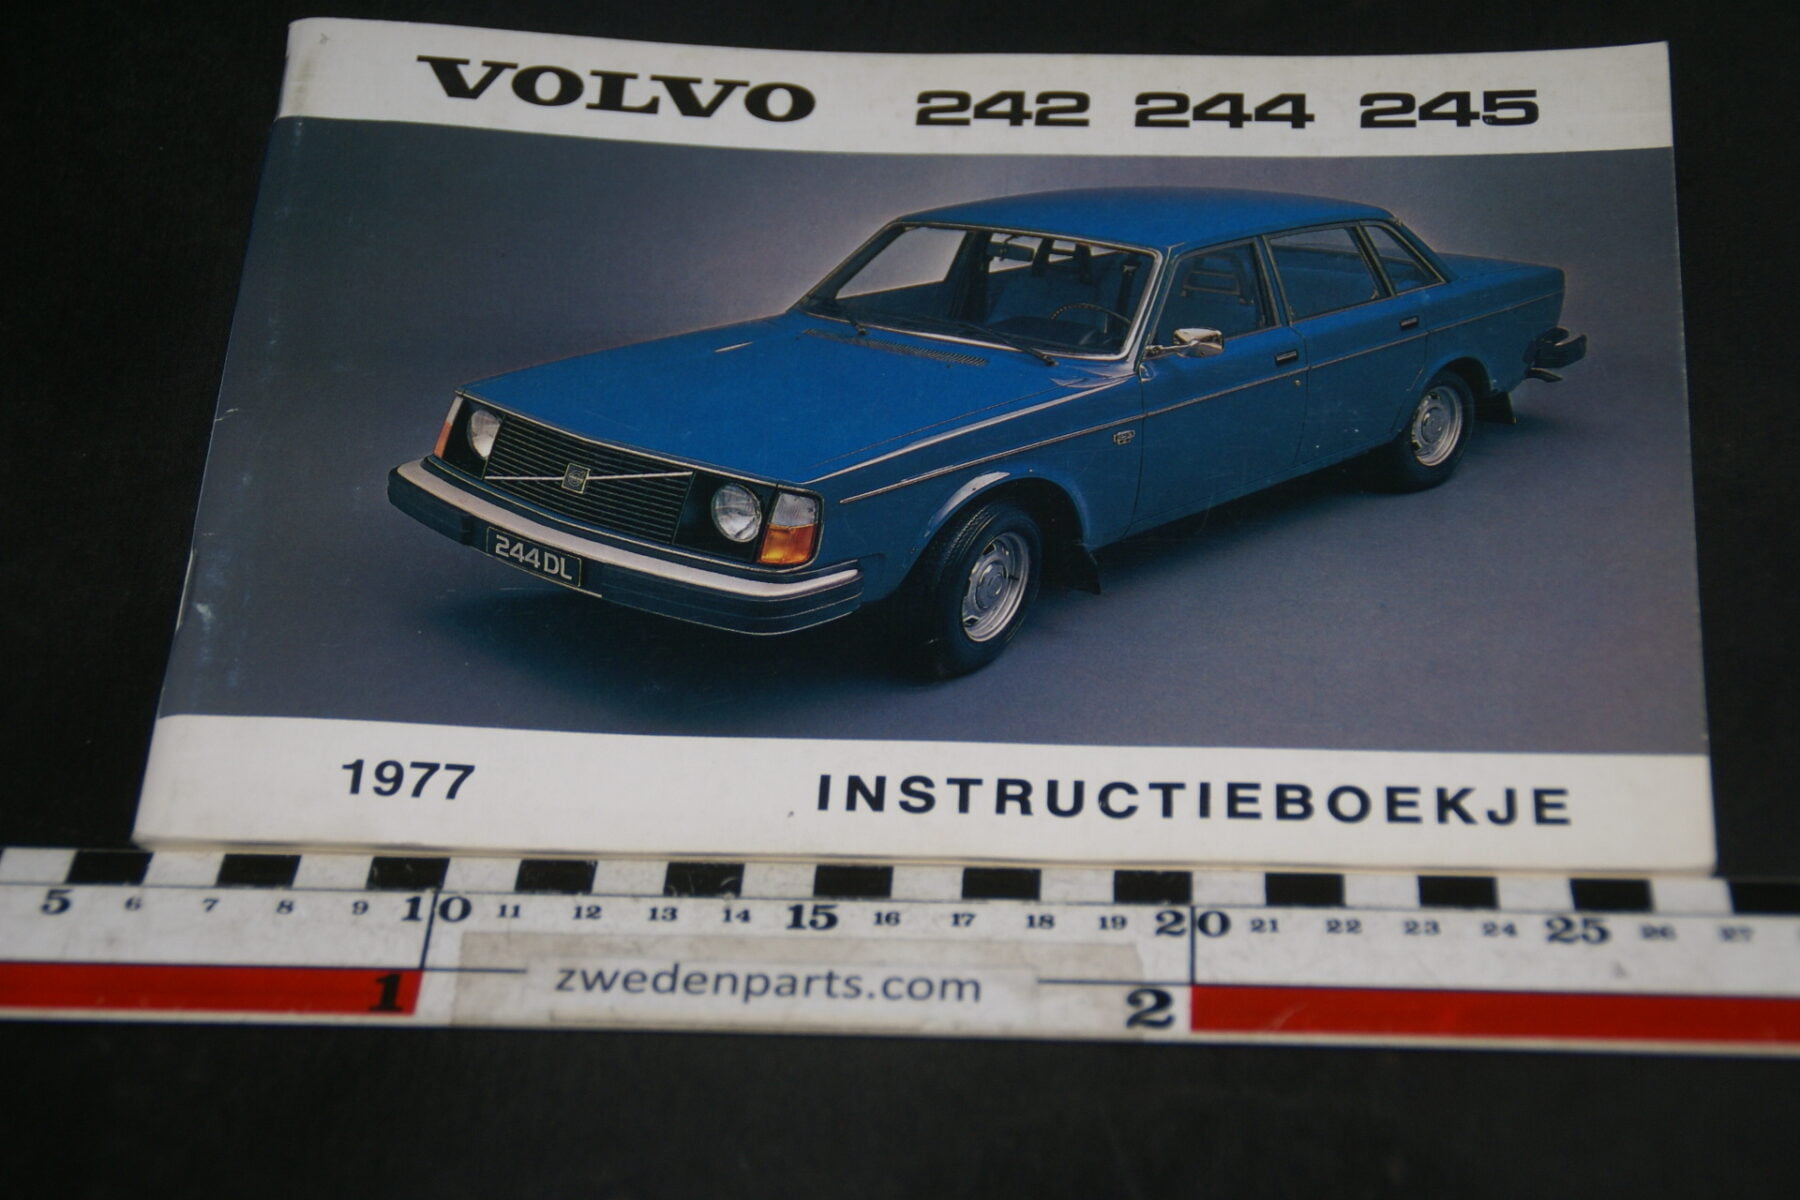 DSC07032 1976 origineel Volvo 242 244 245  instructieboekje TP 1414-1